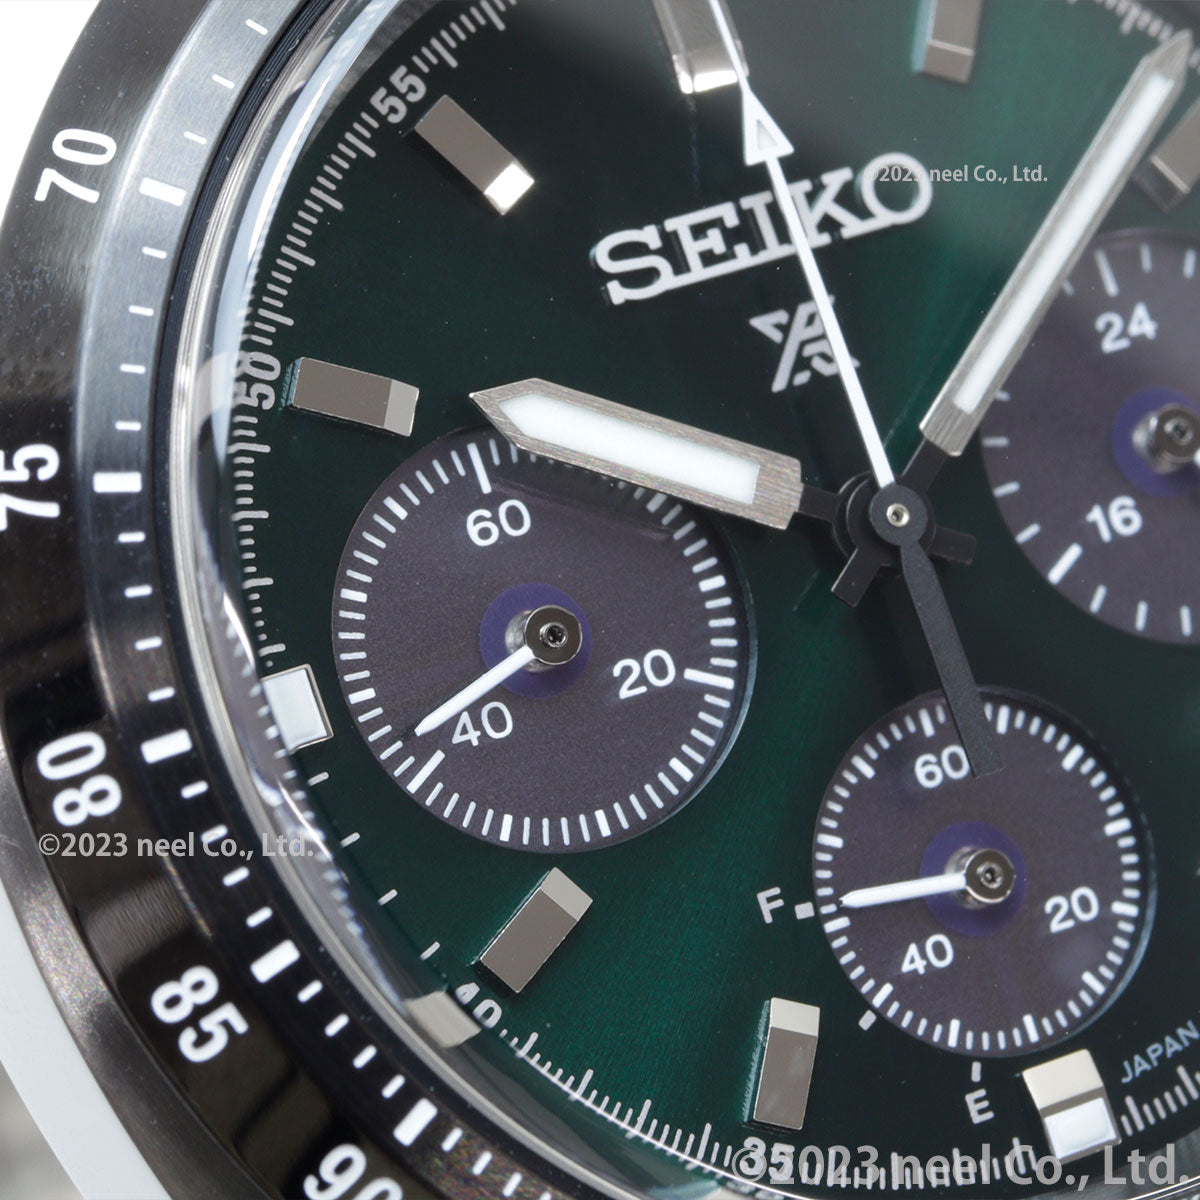 セイコー プロスペックス SBDL107 スピードタイマー ソーラークロノグラフ 腕時計 メンズ SEIKO PROSPEX SPEEDTIMER